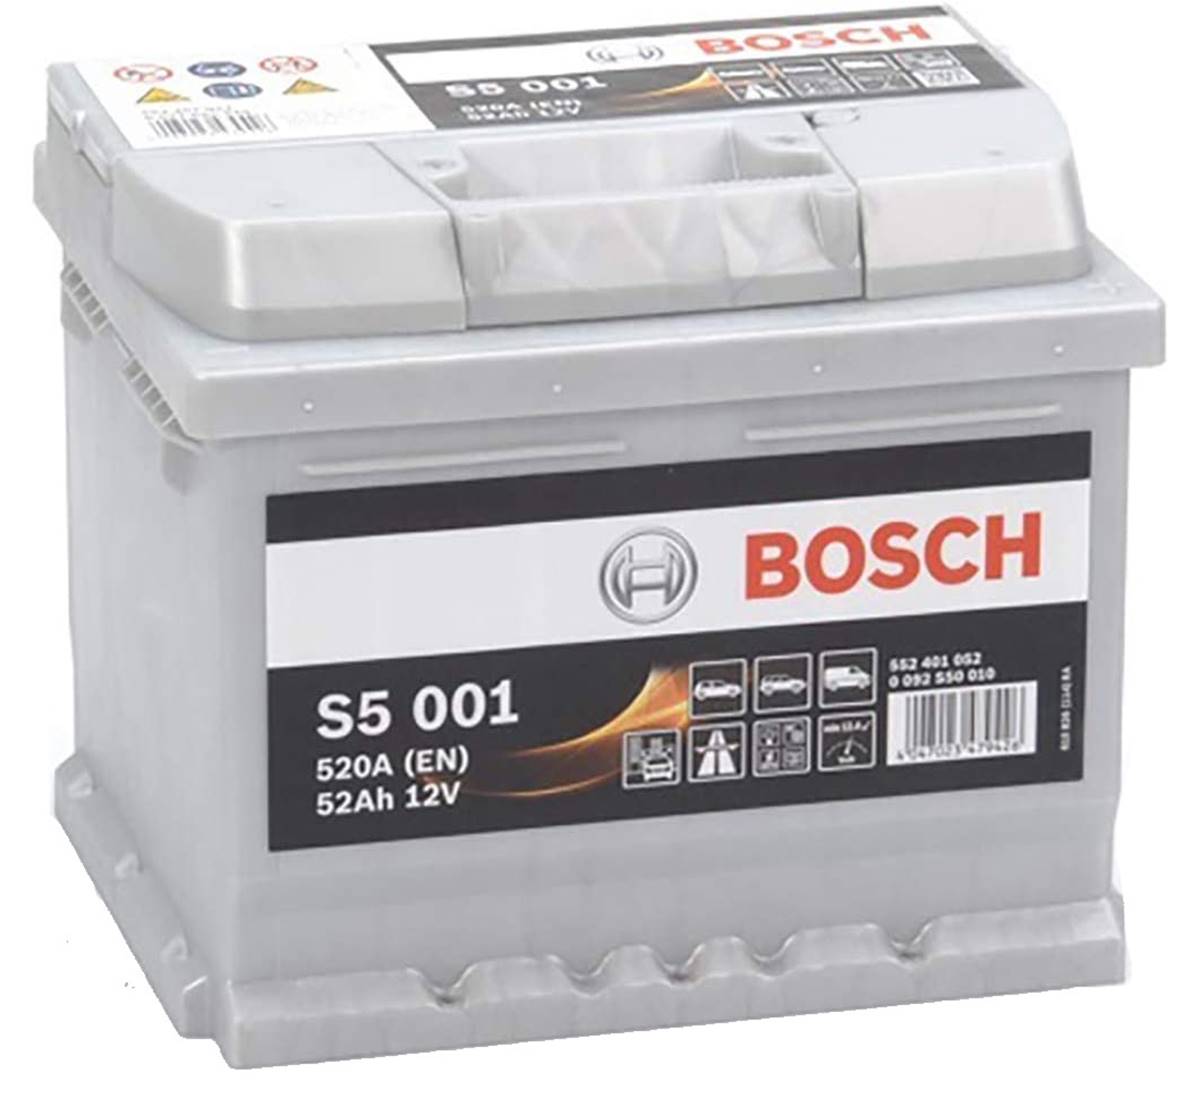 Batterie PL/Agri BOSCH T3040 12v 125ah 720A J1